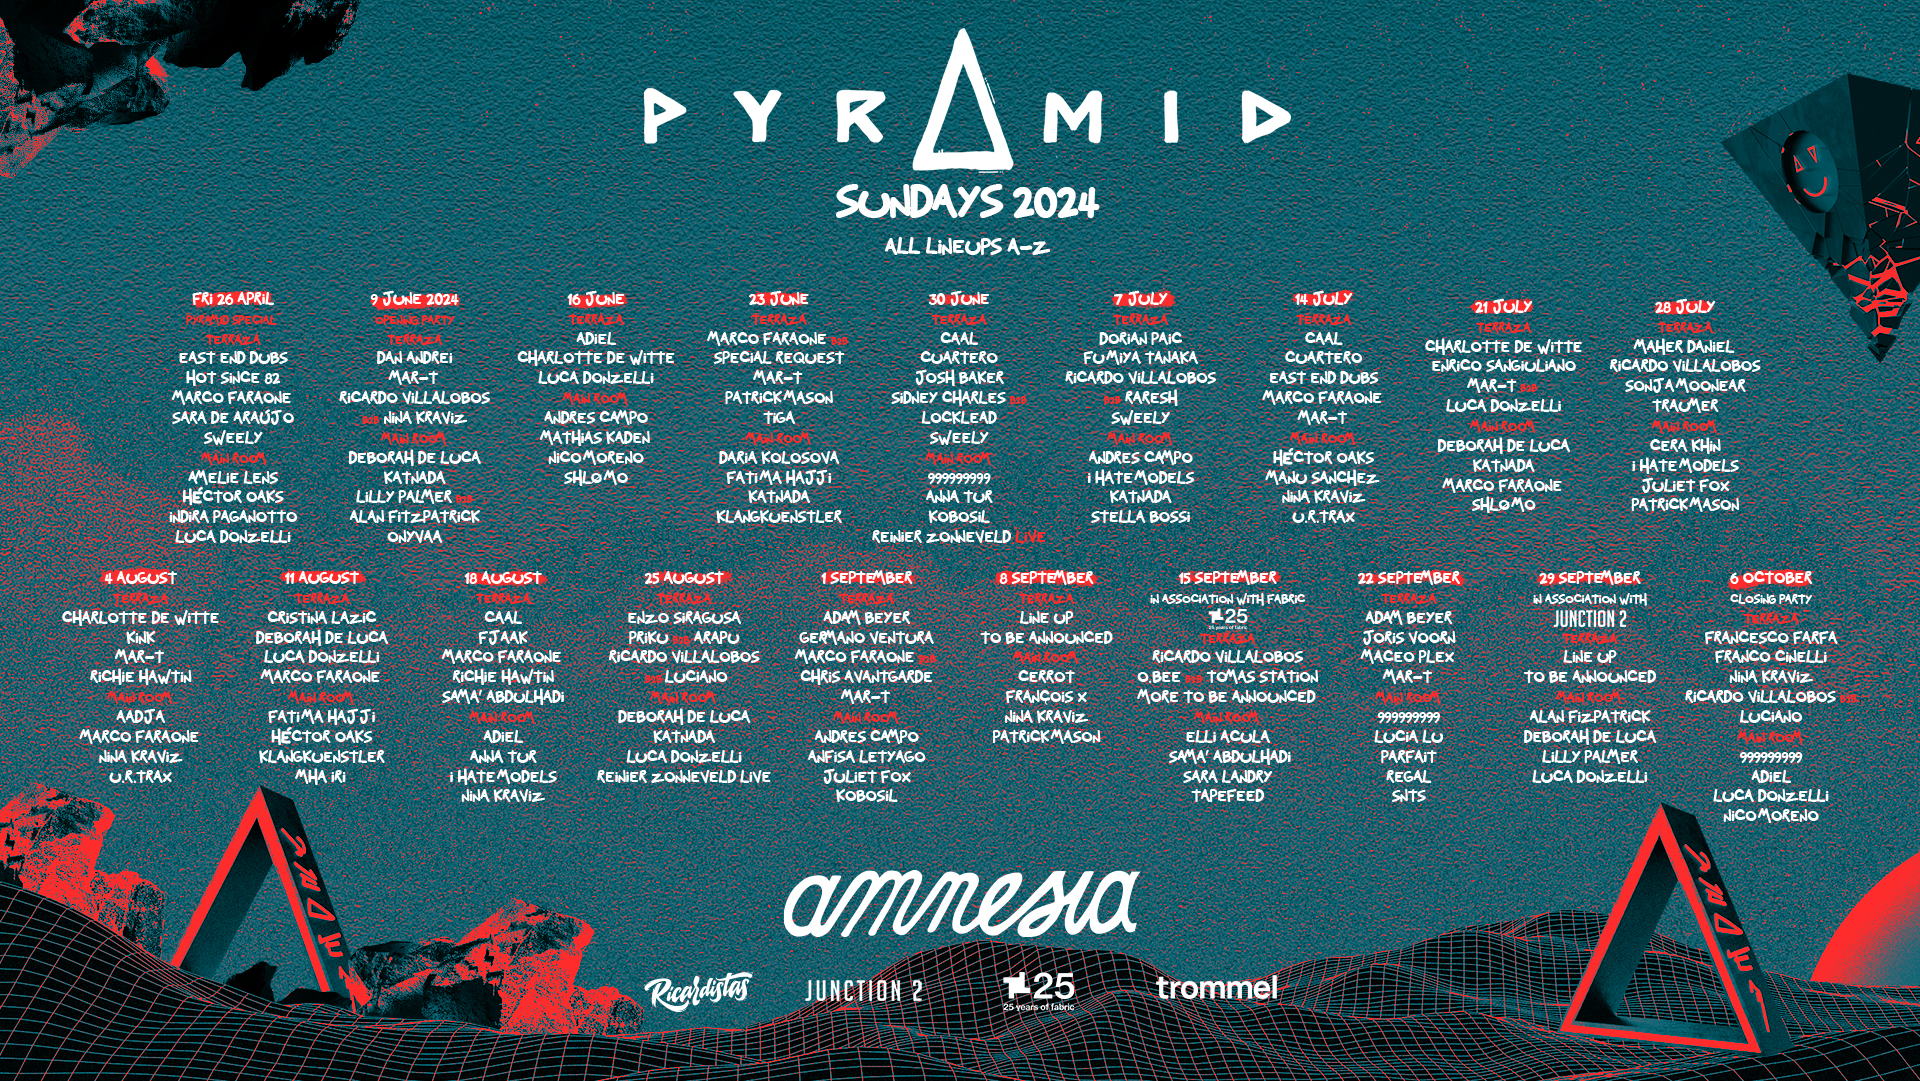 Pyramid at Amnesia Ibiza announces their weekly 2024 calendar